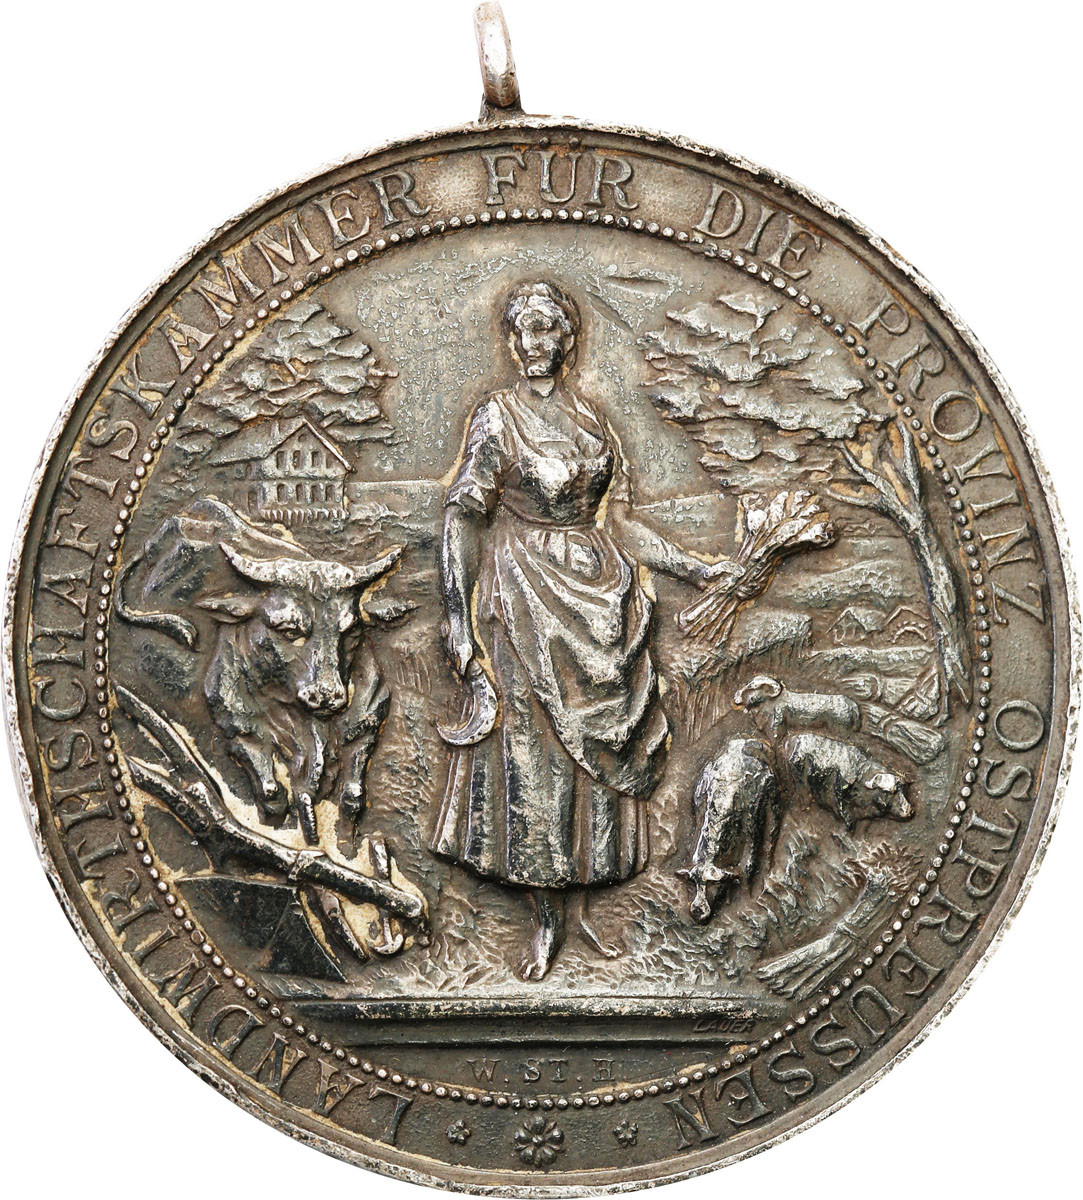 Niemcy, Prusy Wschodnie. Medal wystawa przemysłowa i rolnicza, srebro